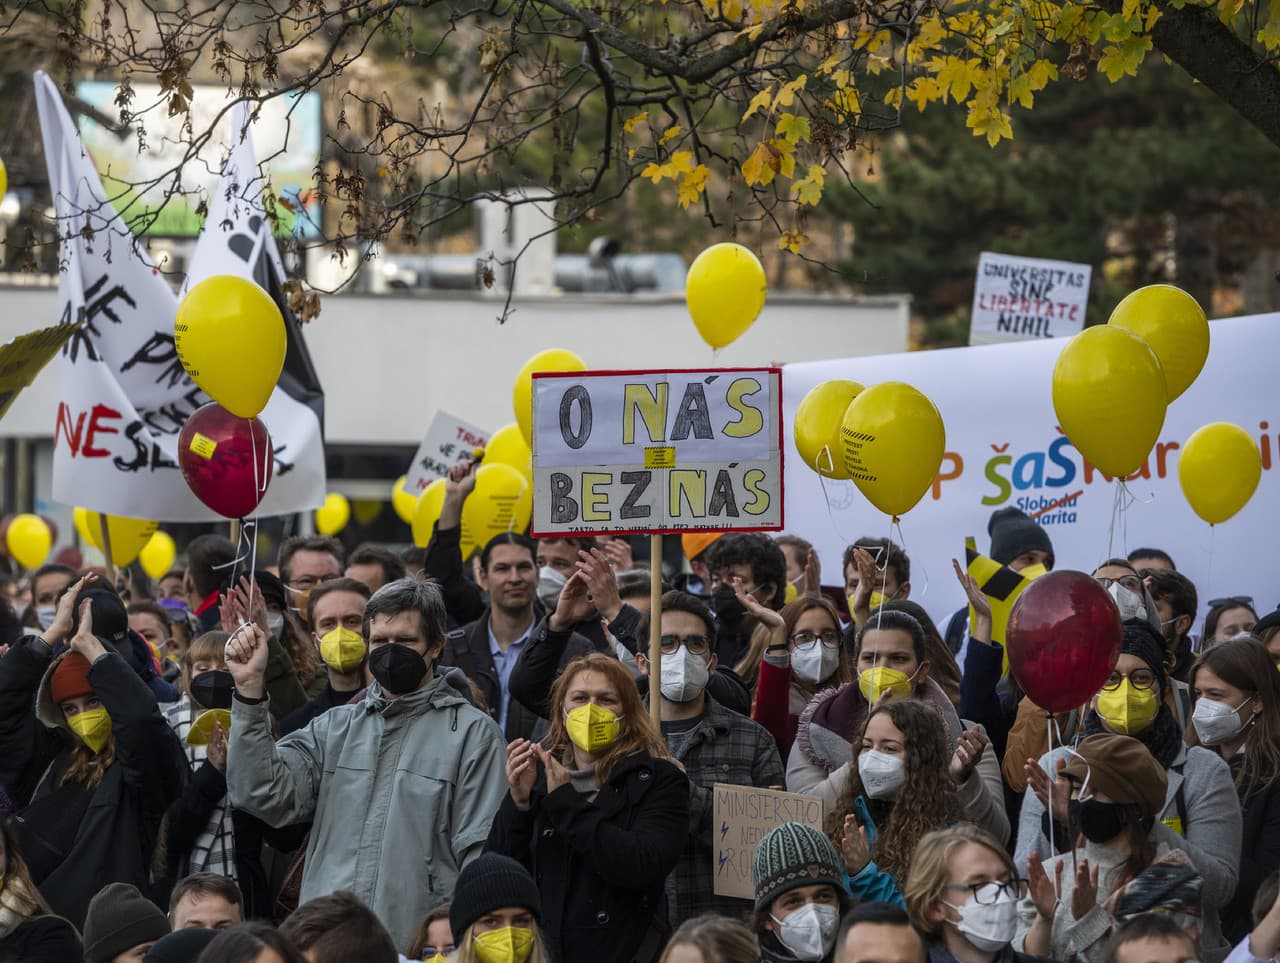 Zodpovedný protest za slobodné univerzity v Bratislave